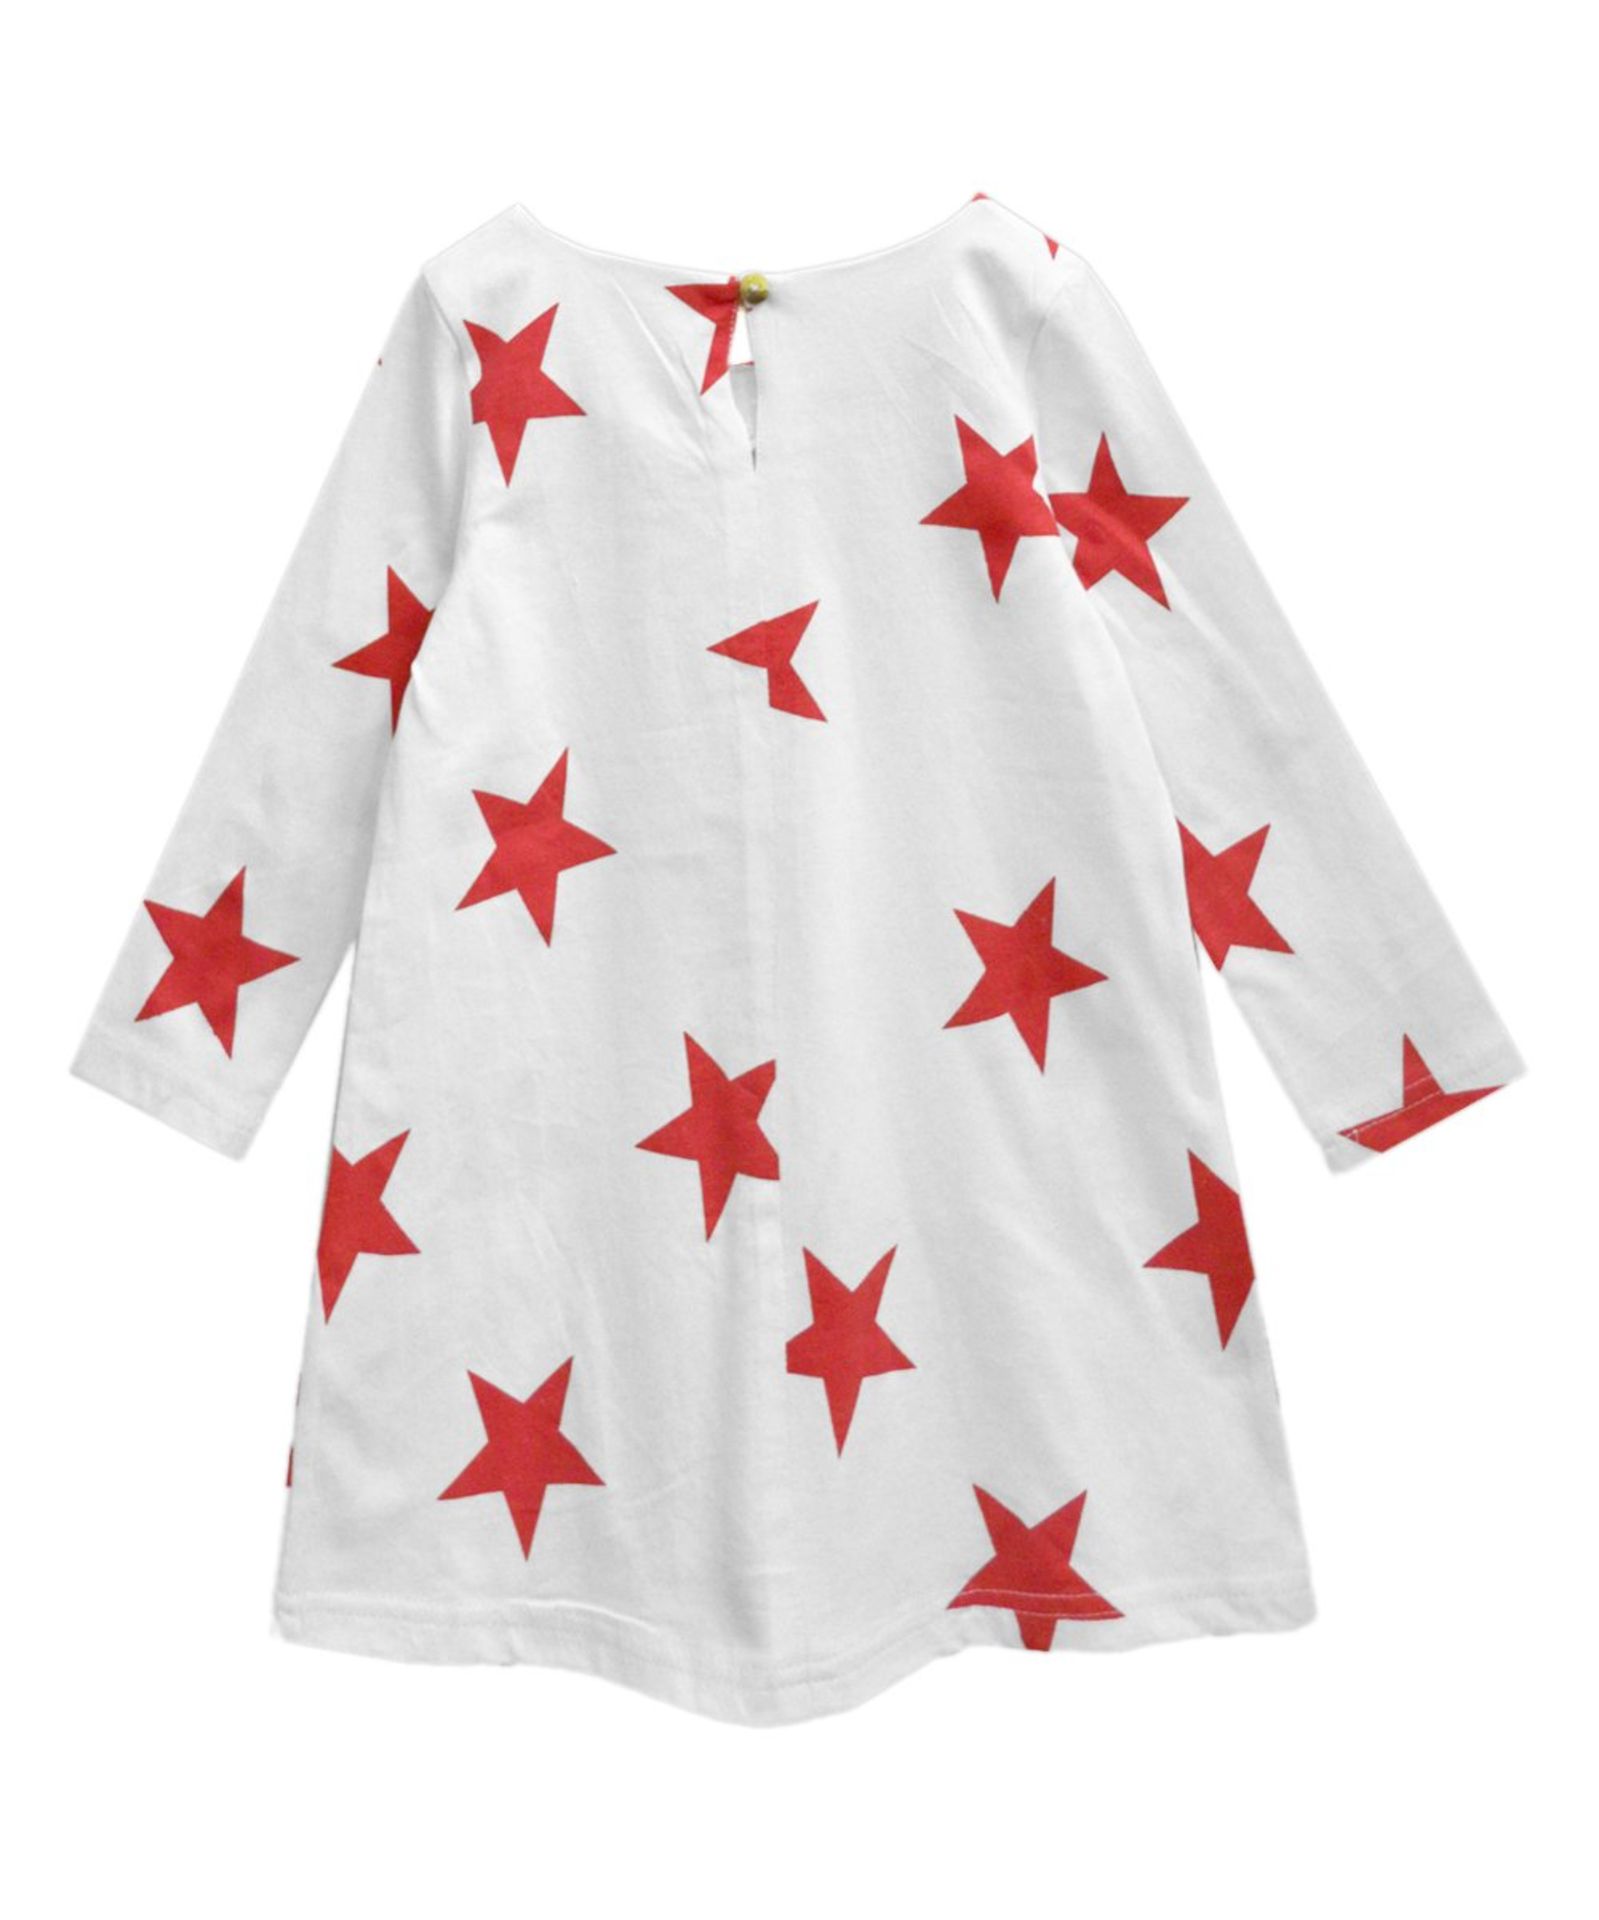 White & Red Star Aurora Dress - Infant, Toddler & Girls - Image 2 of 2